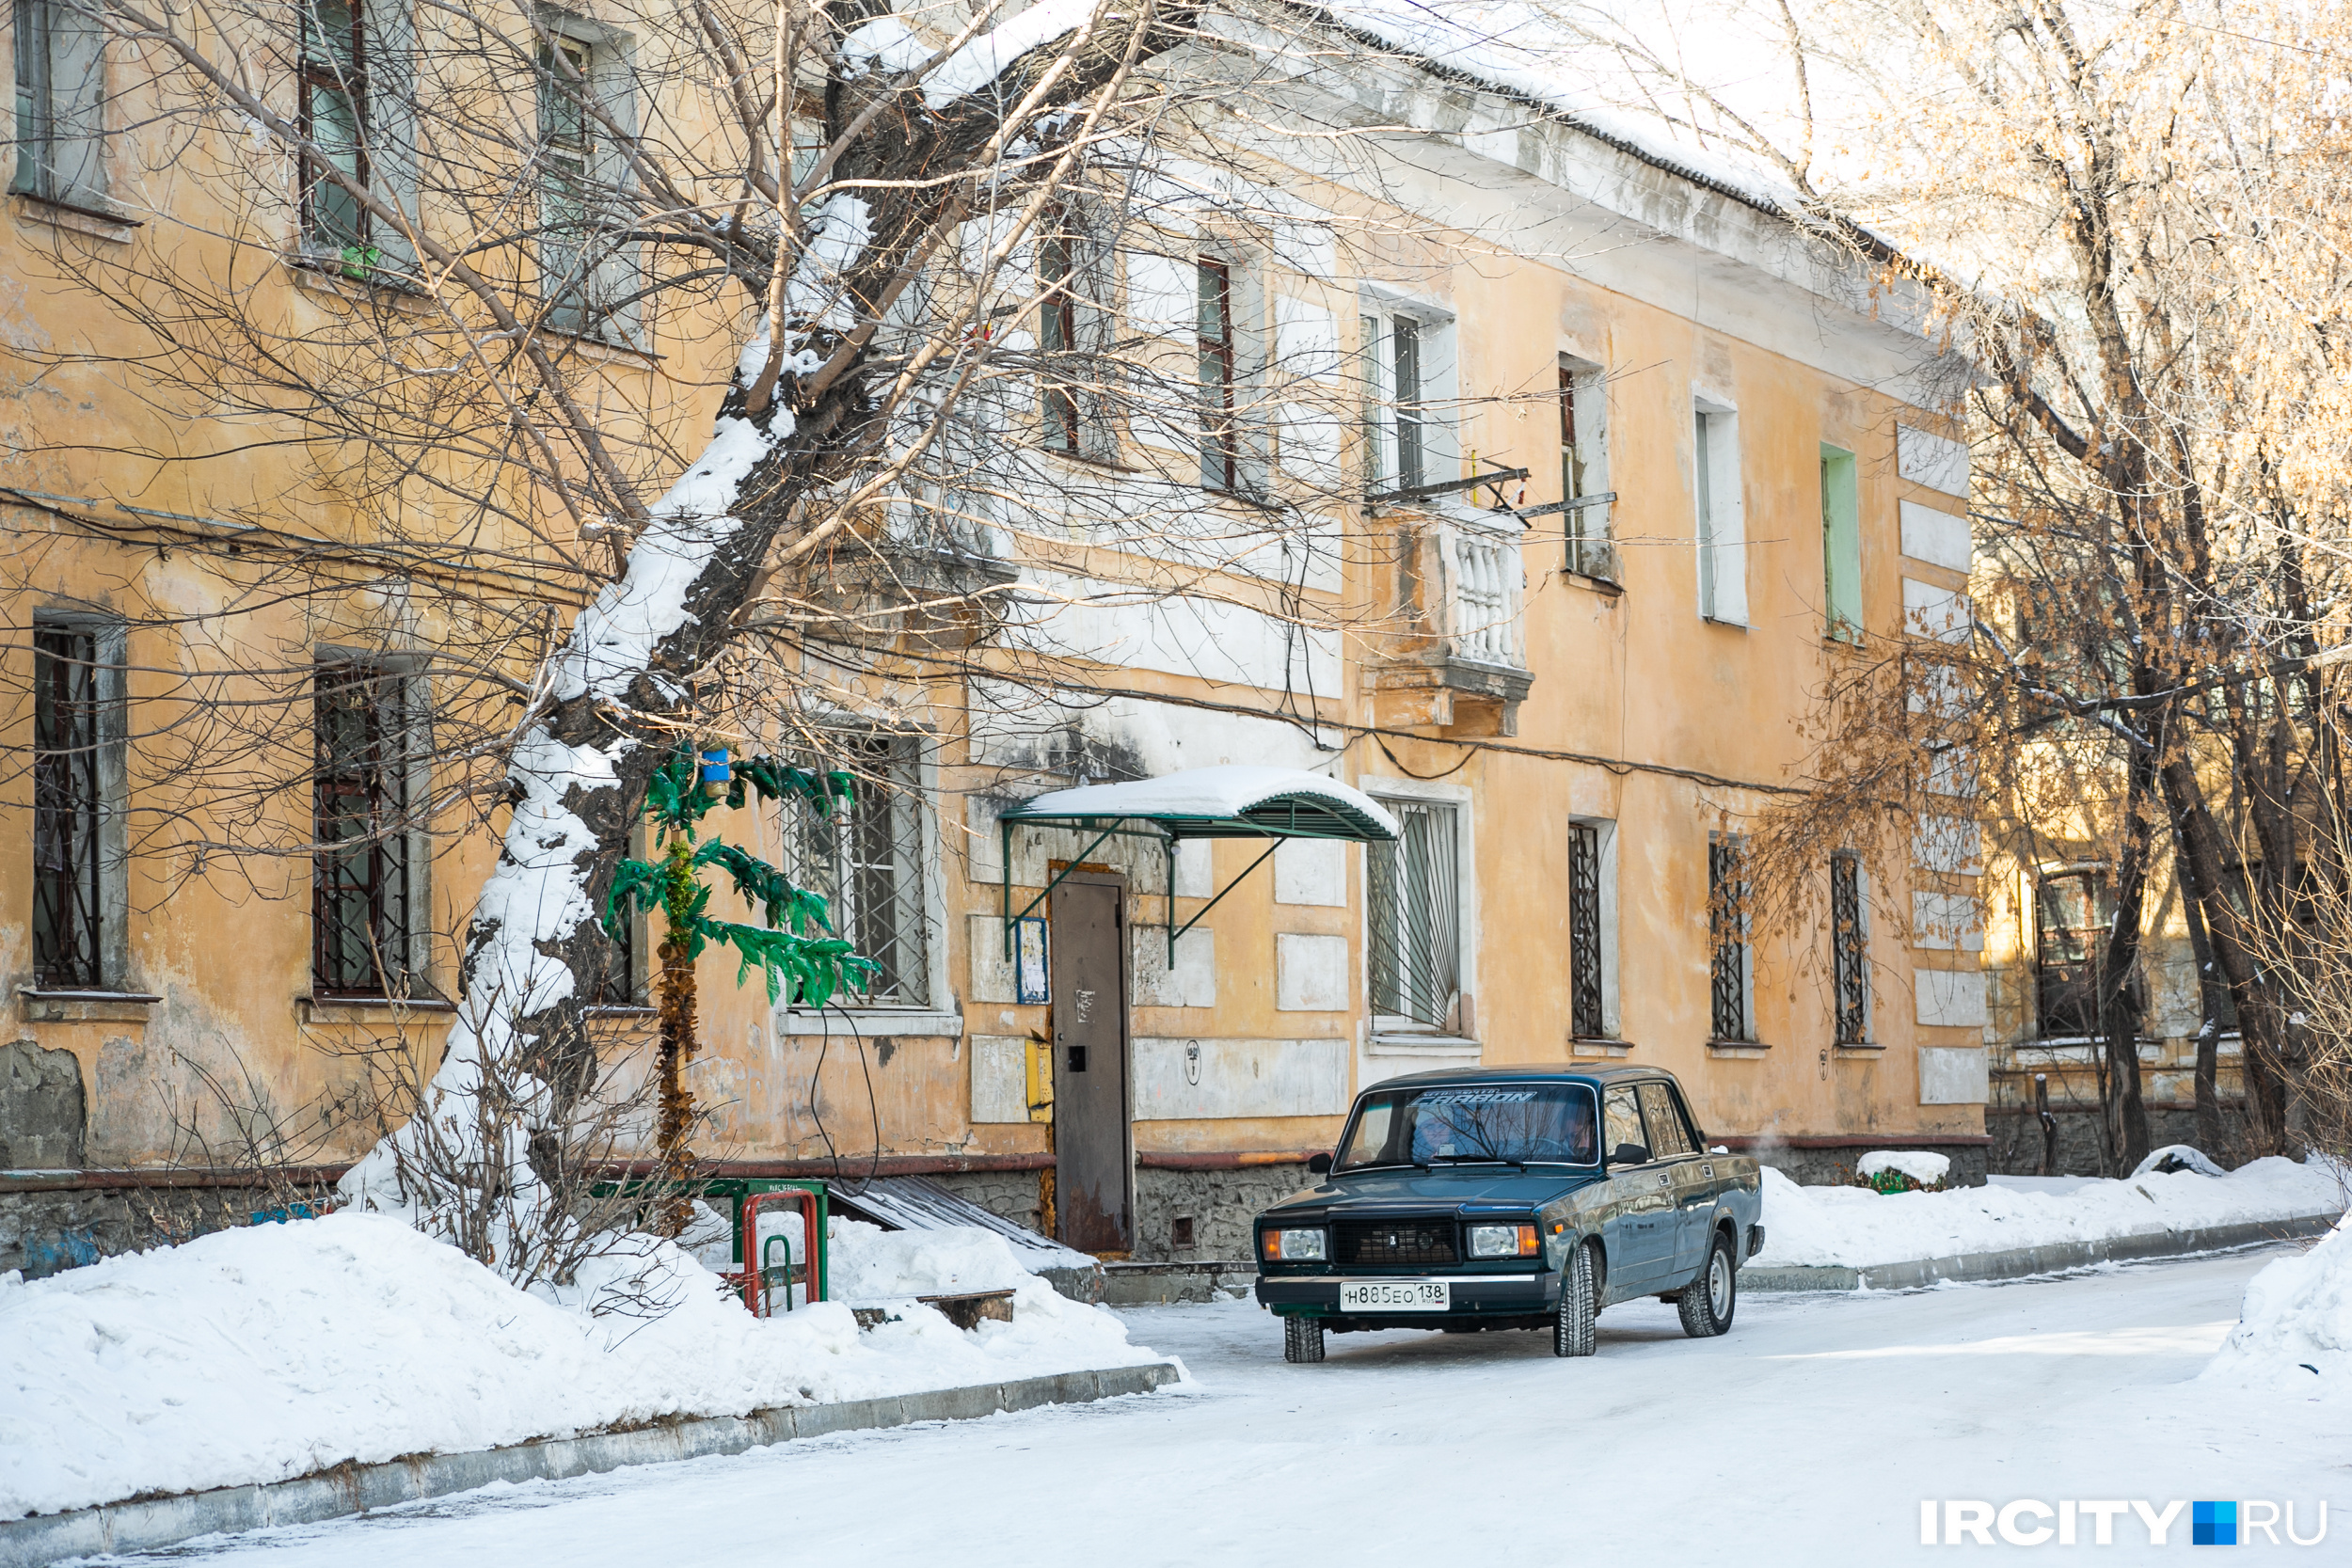 Пальмы в сибирском городе — не миф, а реальность